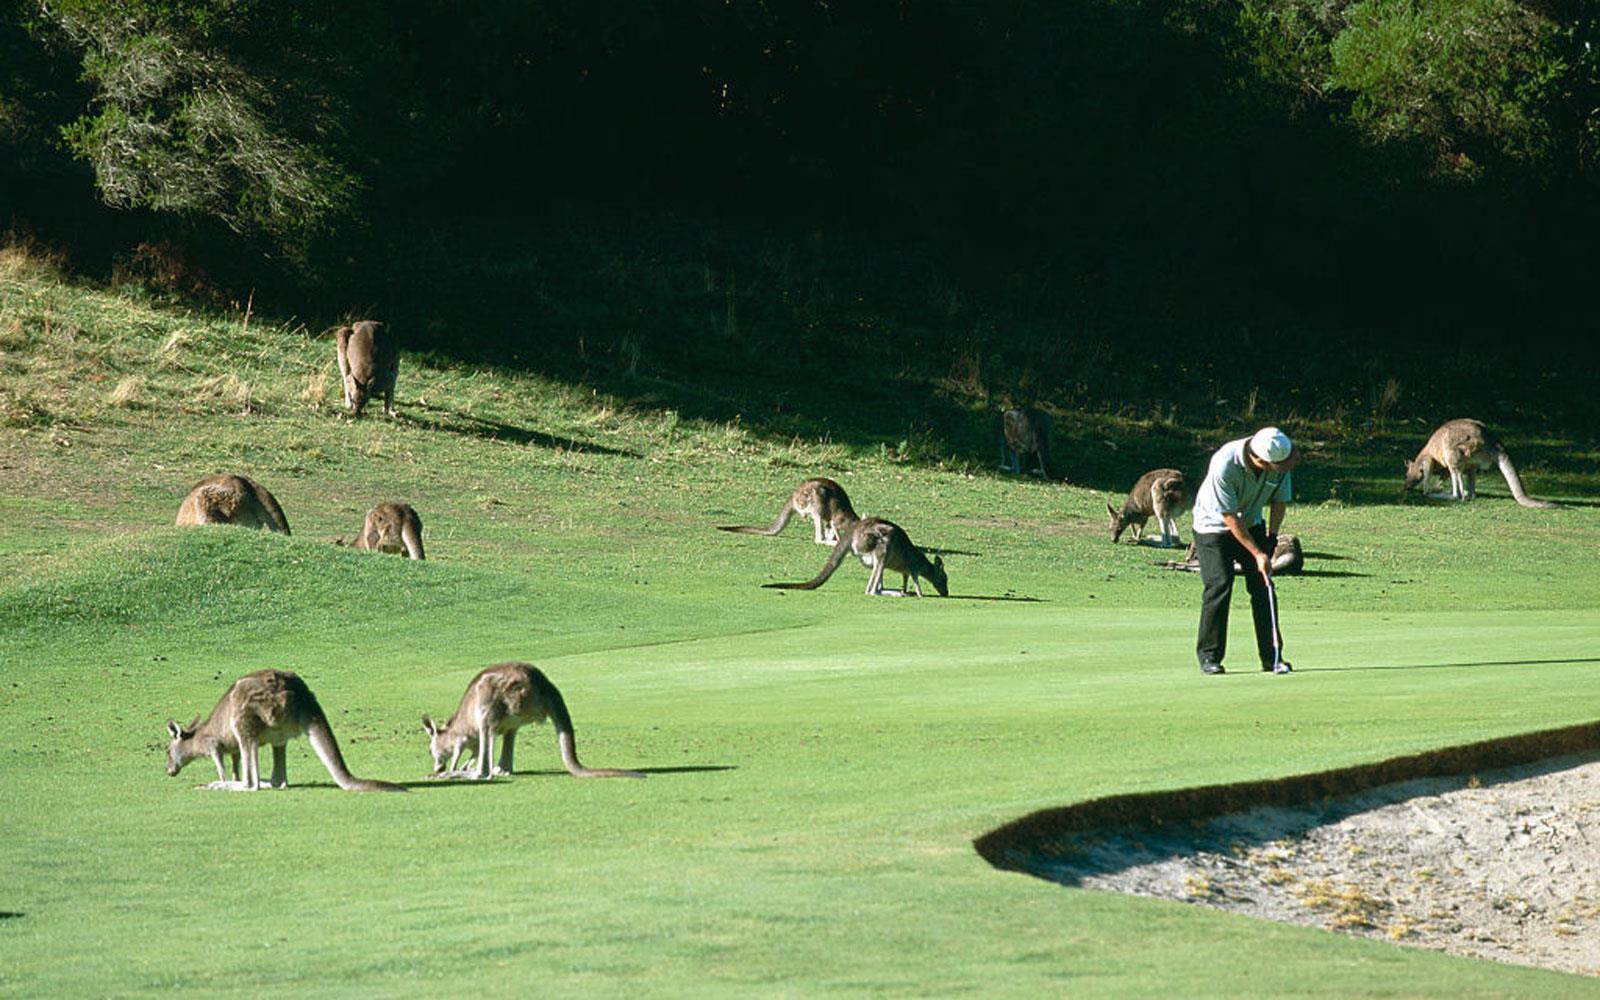 Chơi golf cùng 300 con kangaroo tại Australia Ảnh 1